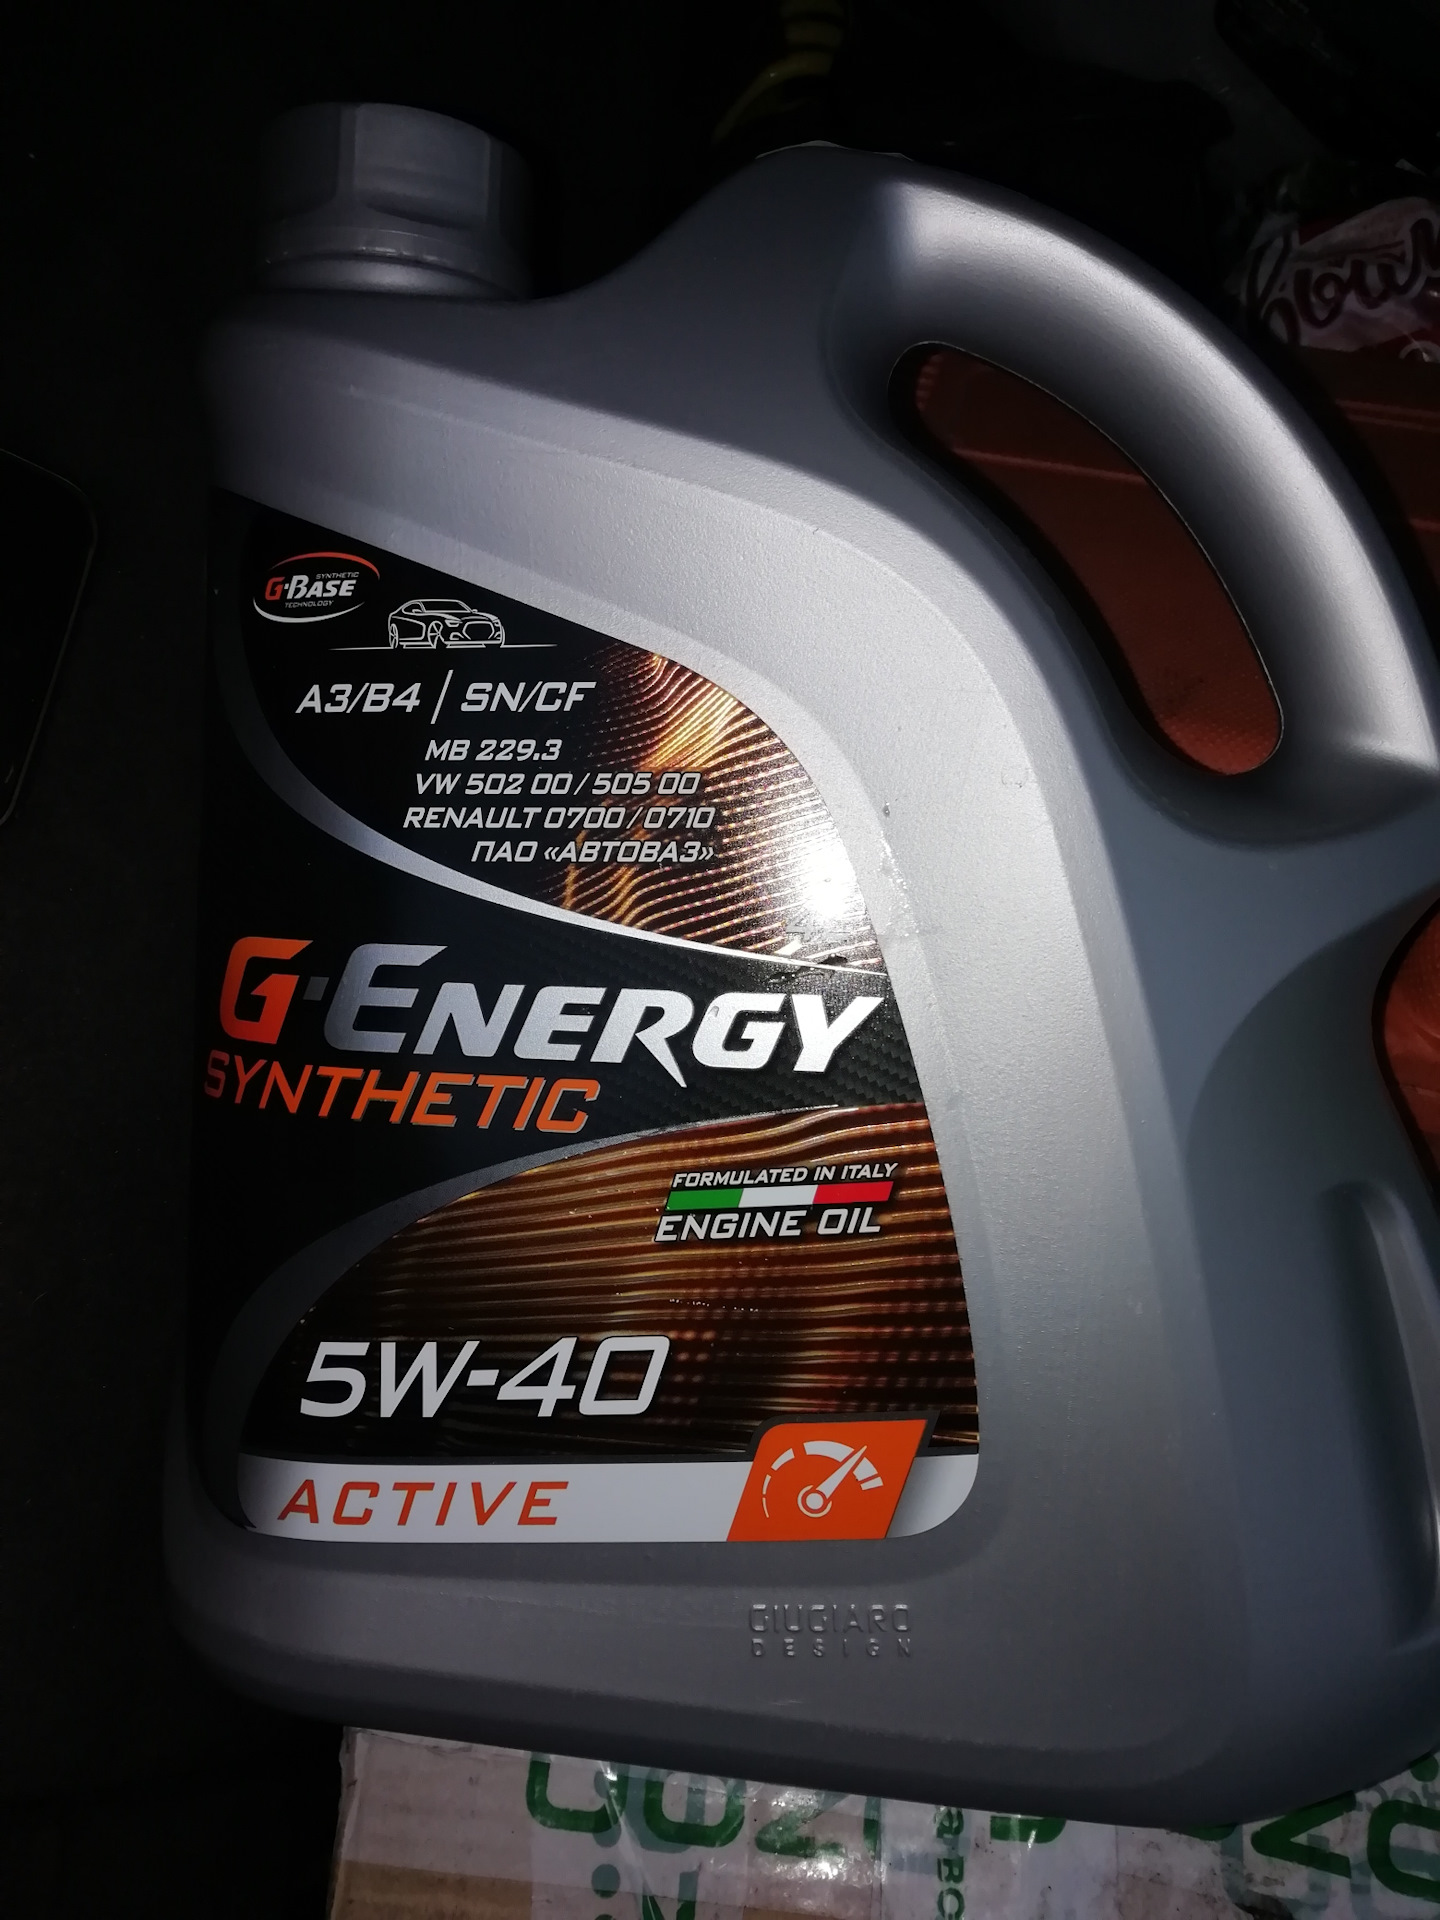 Масло джи драйв. G Energy 5w40 синтетика Active. G Energy Synthetic 5w40. G-Energy Synthetic Active 5w40 4л. Масло g Energy 5w40 синтетика Актив.